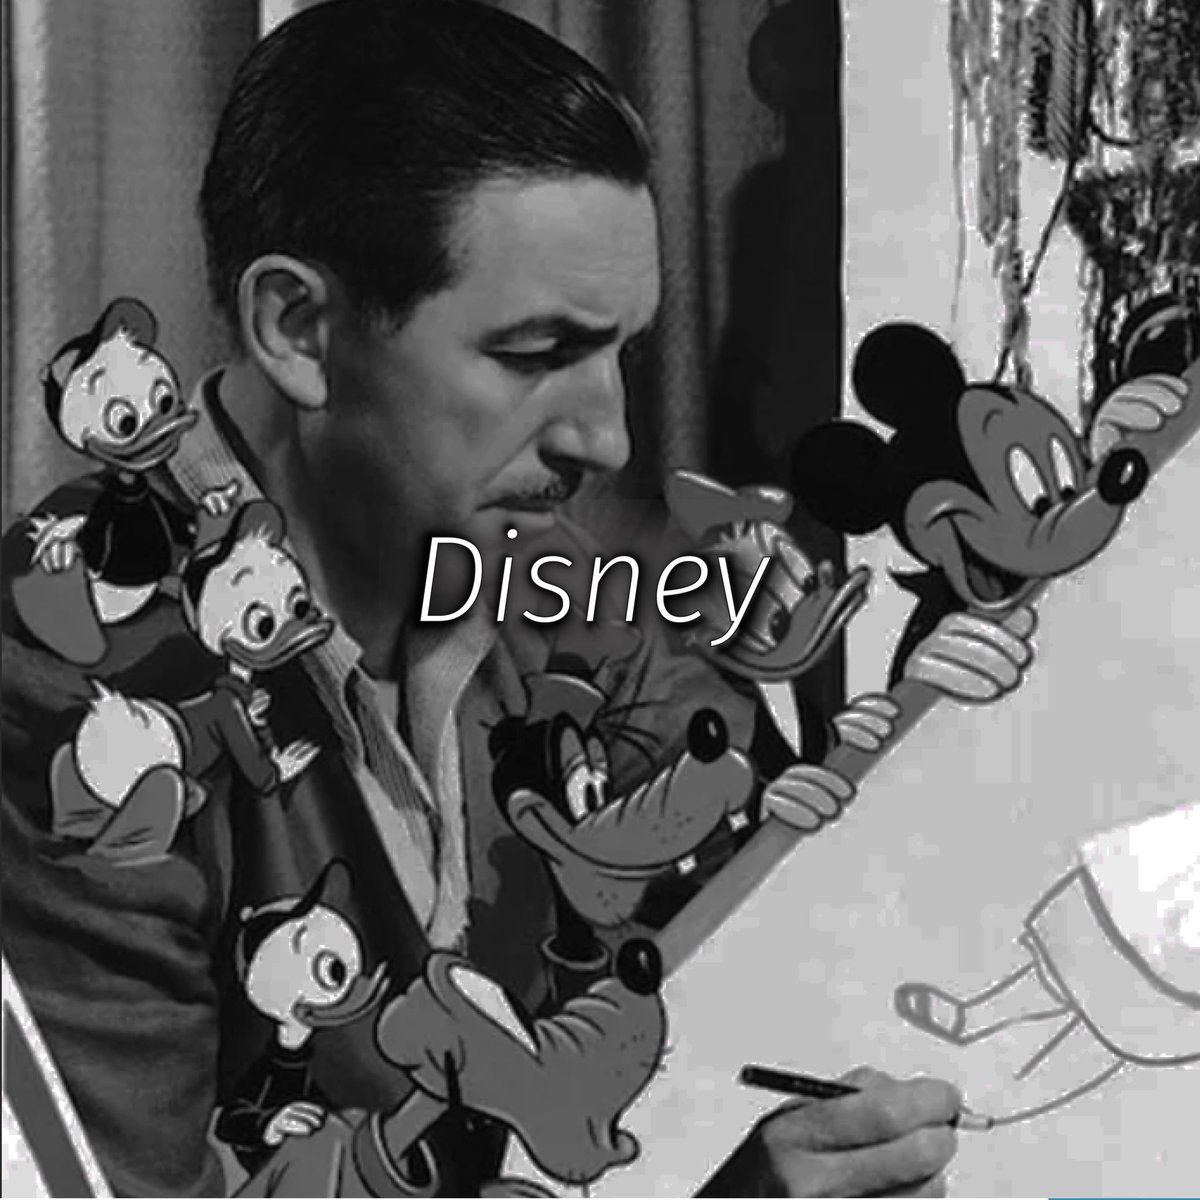 Secretos Disney revelados: Dalí, Club 33, árboles de naranja y las musas de las princesas. ¡Cuéntanos cuál te  sorprende más!

¡Abrimos hilo!🧵🏰
.
.
#monta #diseñoenpiracion #disney #club33 #Dalí #datoscuriosos #princesasdisney